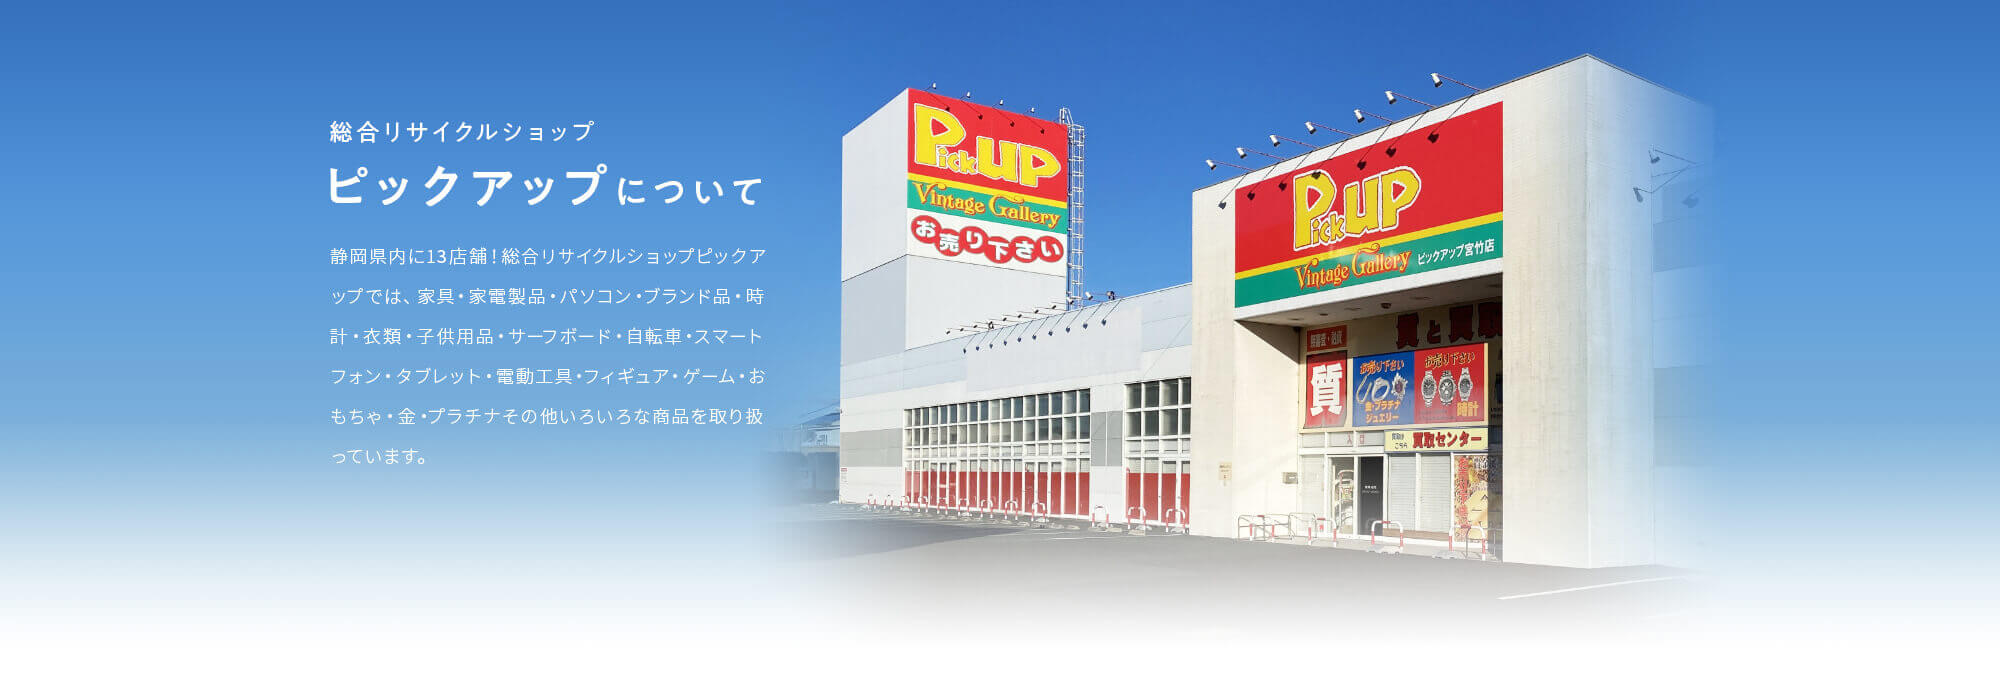 総合リサイクルショップ・ピックアップについて。静岡県内に12店舗！総合リサイクルショップピックアップでは、家具・家電製品・パソコン・ブランド品・時計・衣類・子供用品・サーフボード・自転車スマートフォン・タブレット・電動工具・フィギュア・ゲーム・おもちゃ・金・プラチナその他いろいろな商品を取り扱っています。